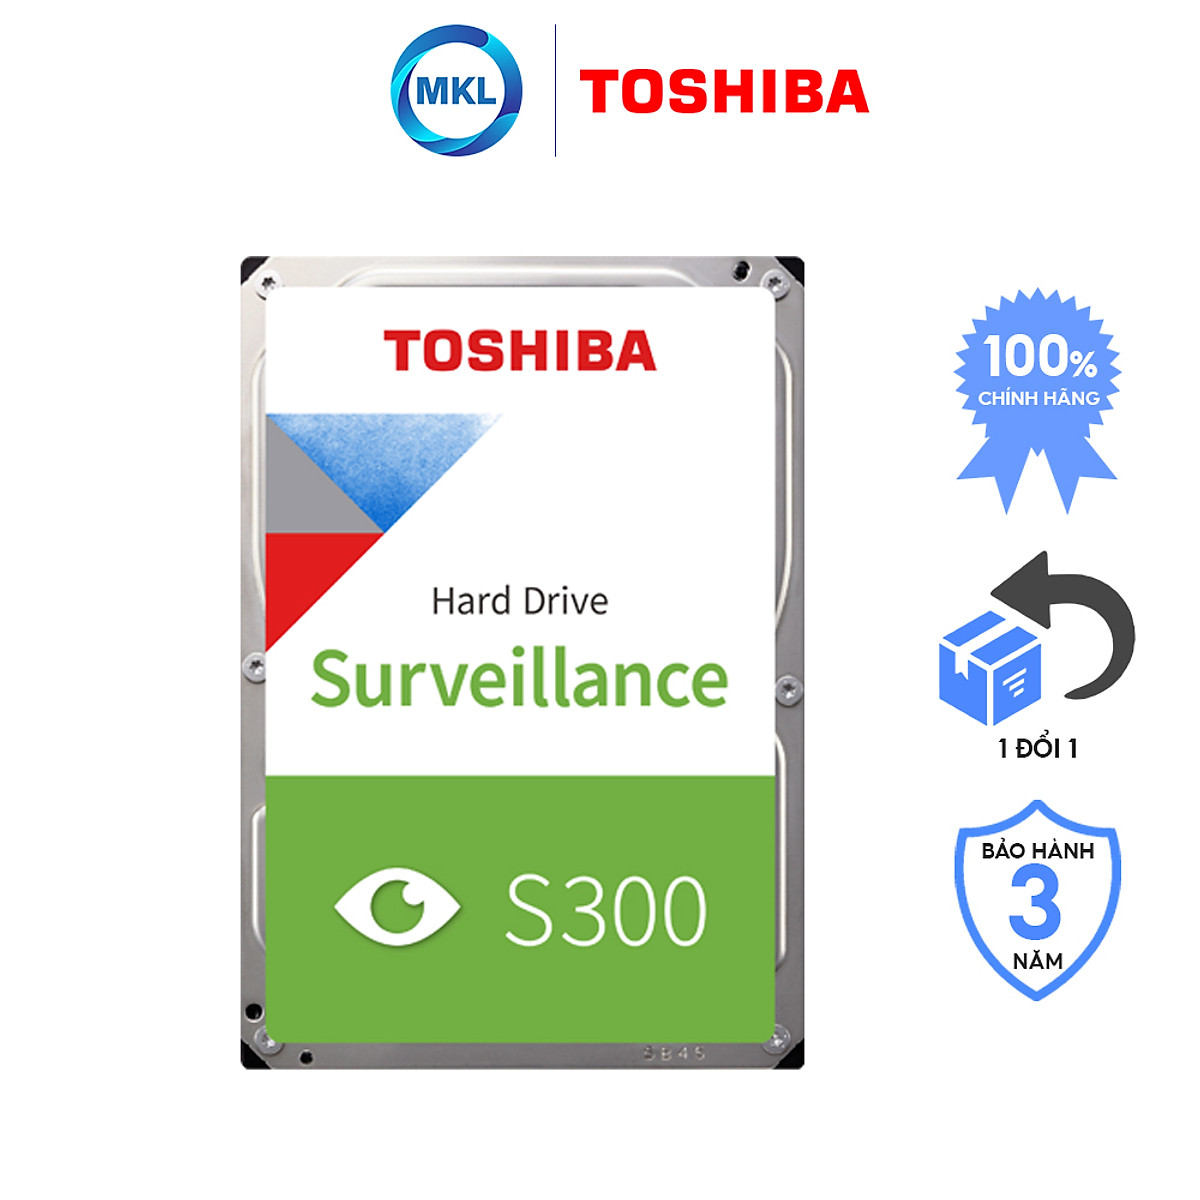 Ổ cứng Camera Toshiba S300 2TB Surveillance Hàng Chính Hãng